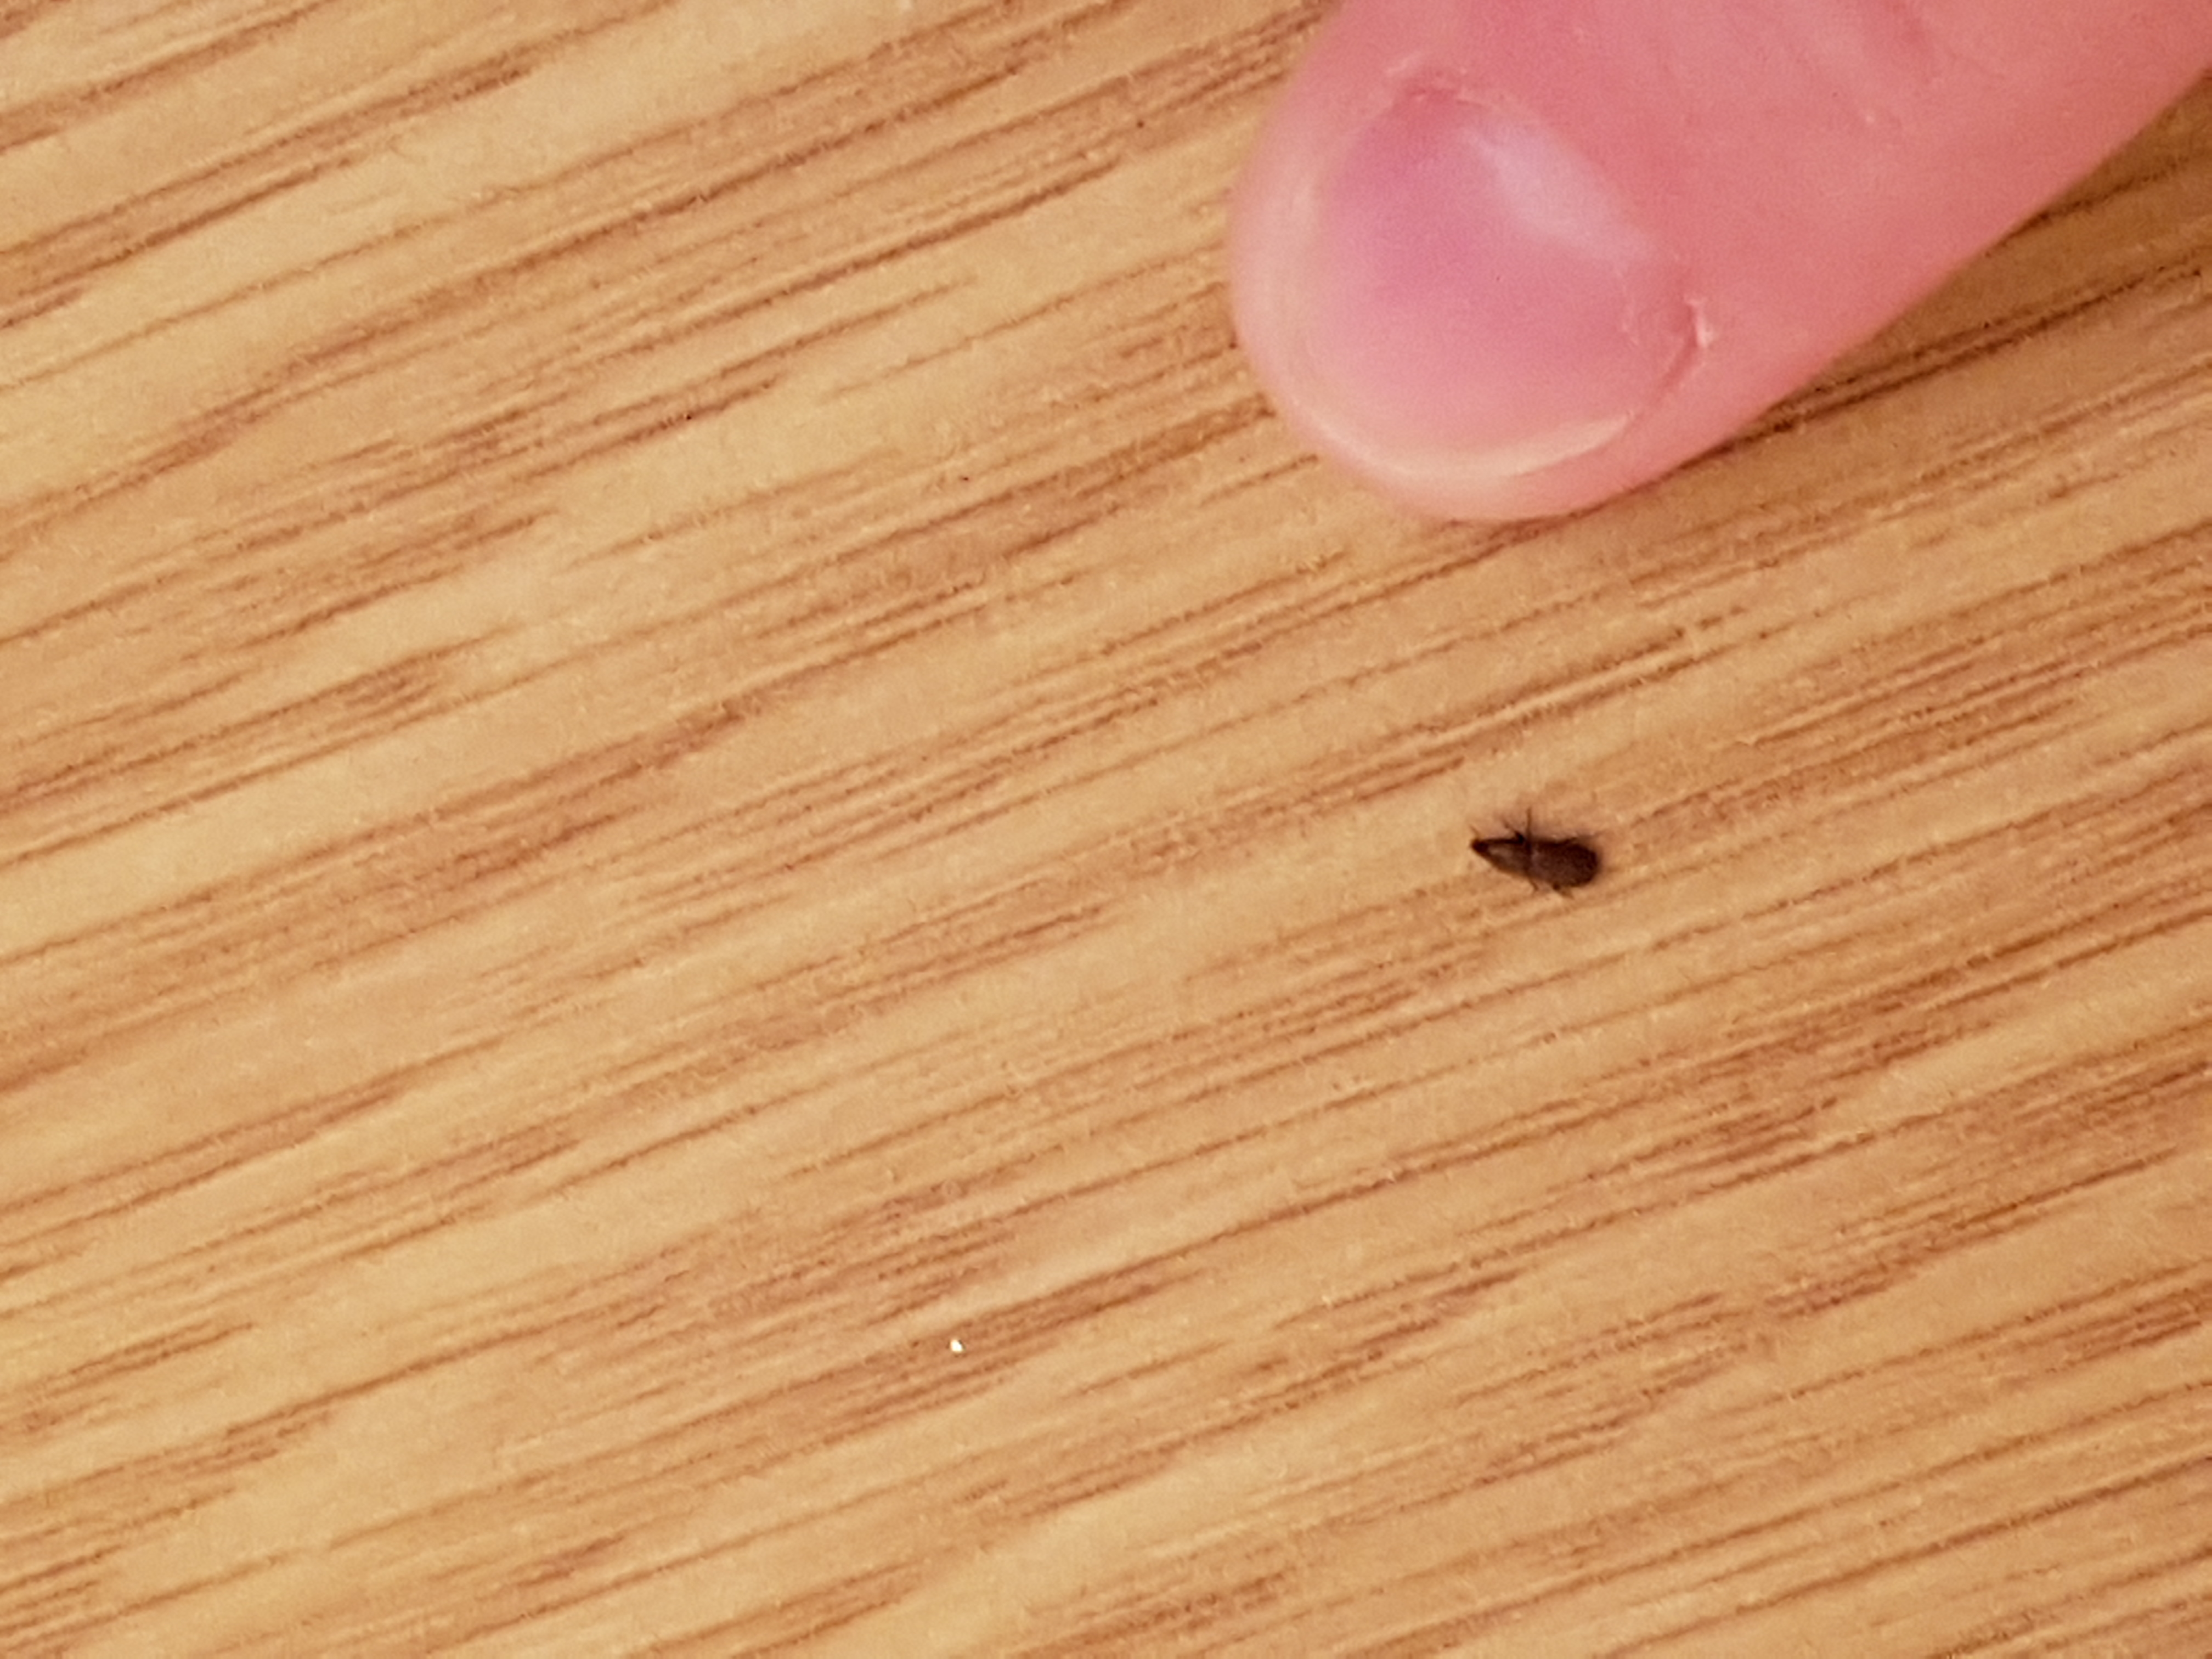 Petite insecte noir a carapace à identifier